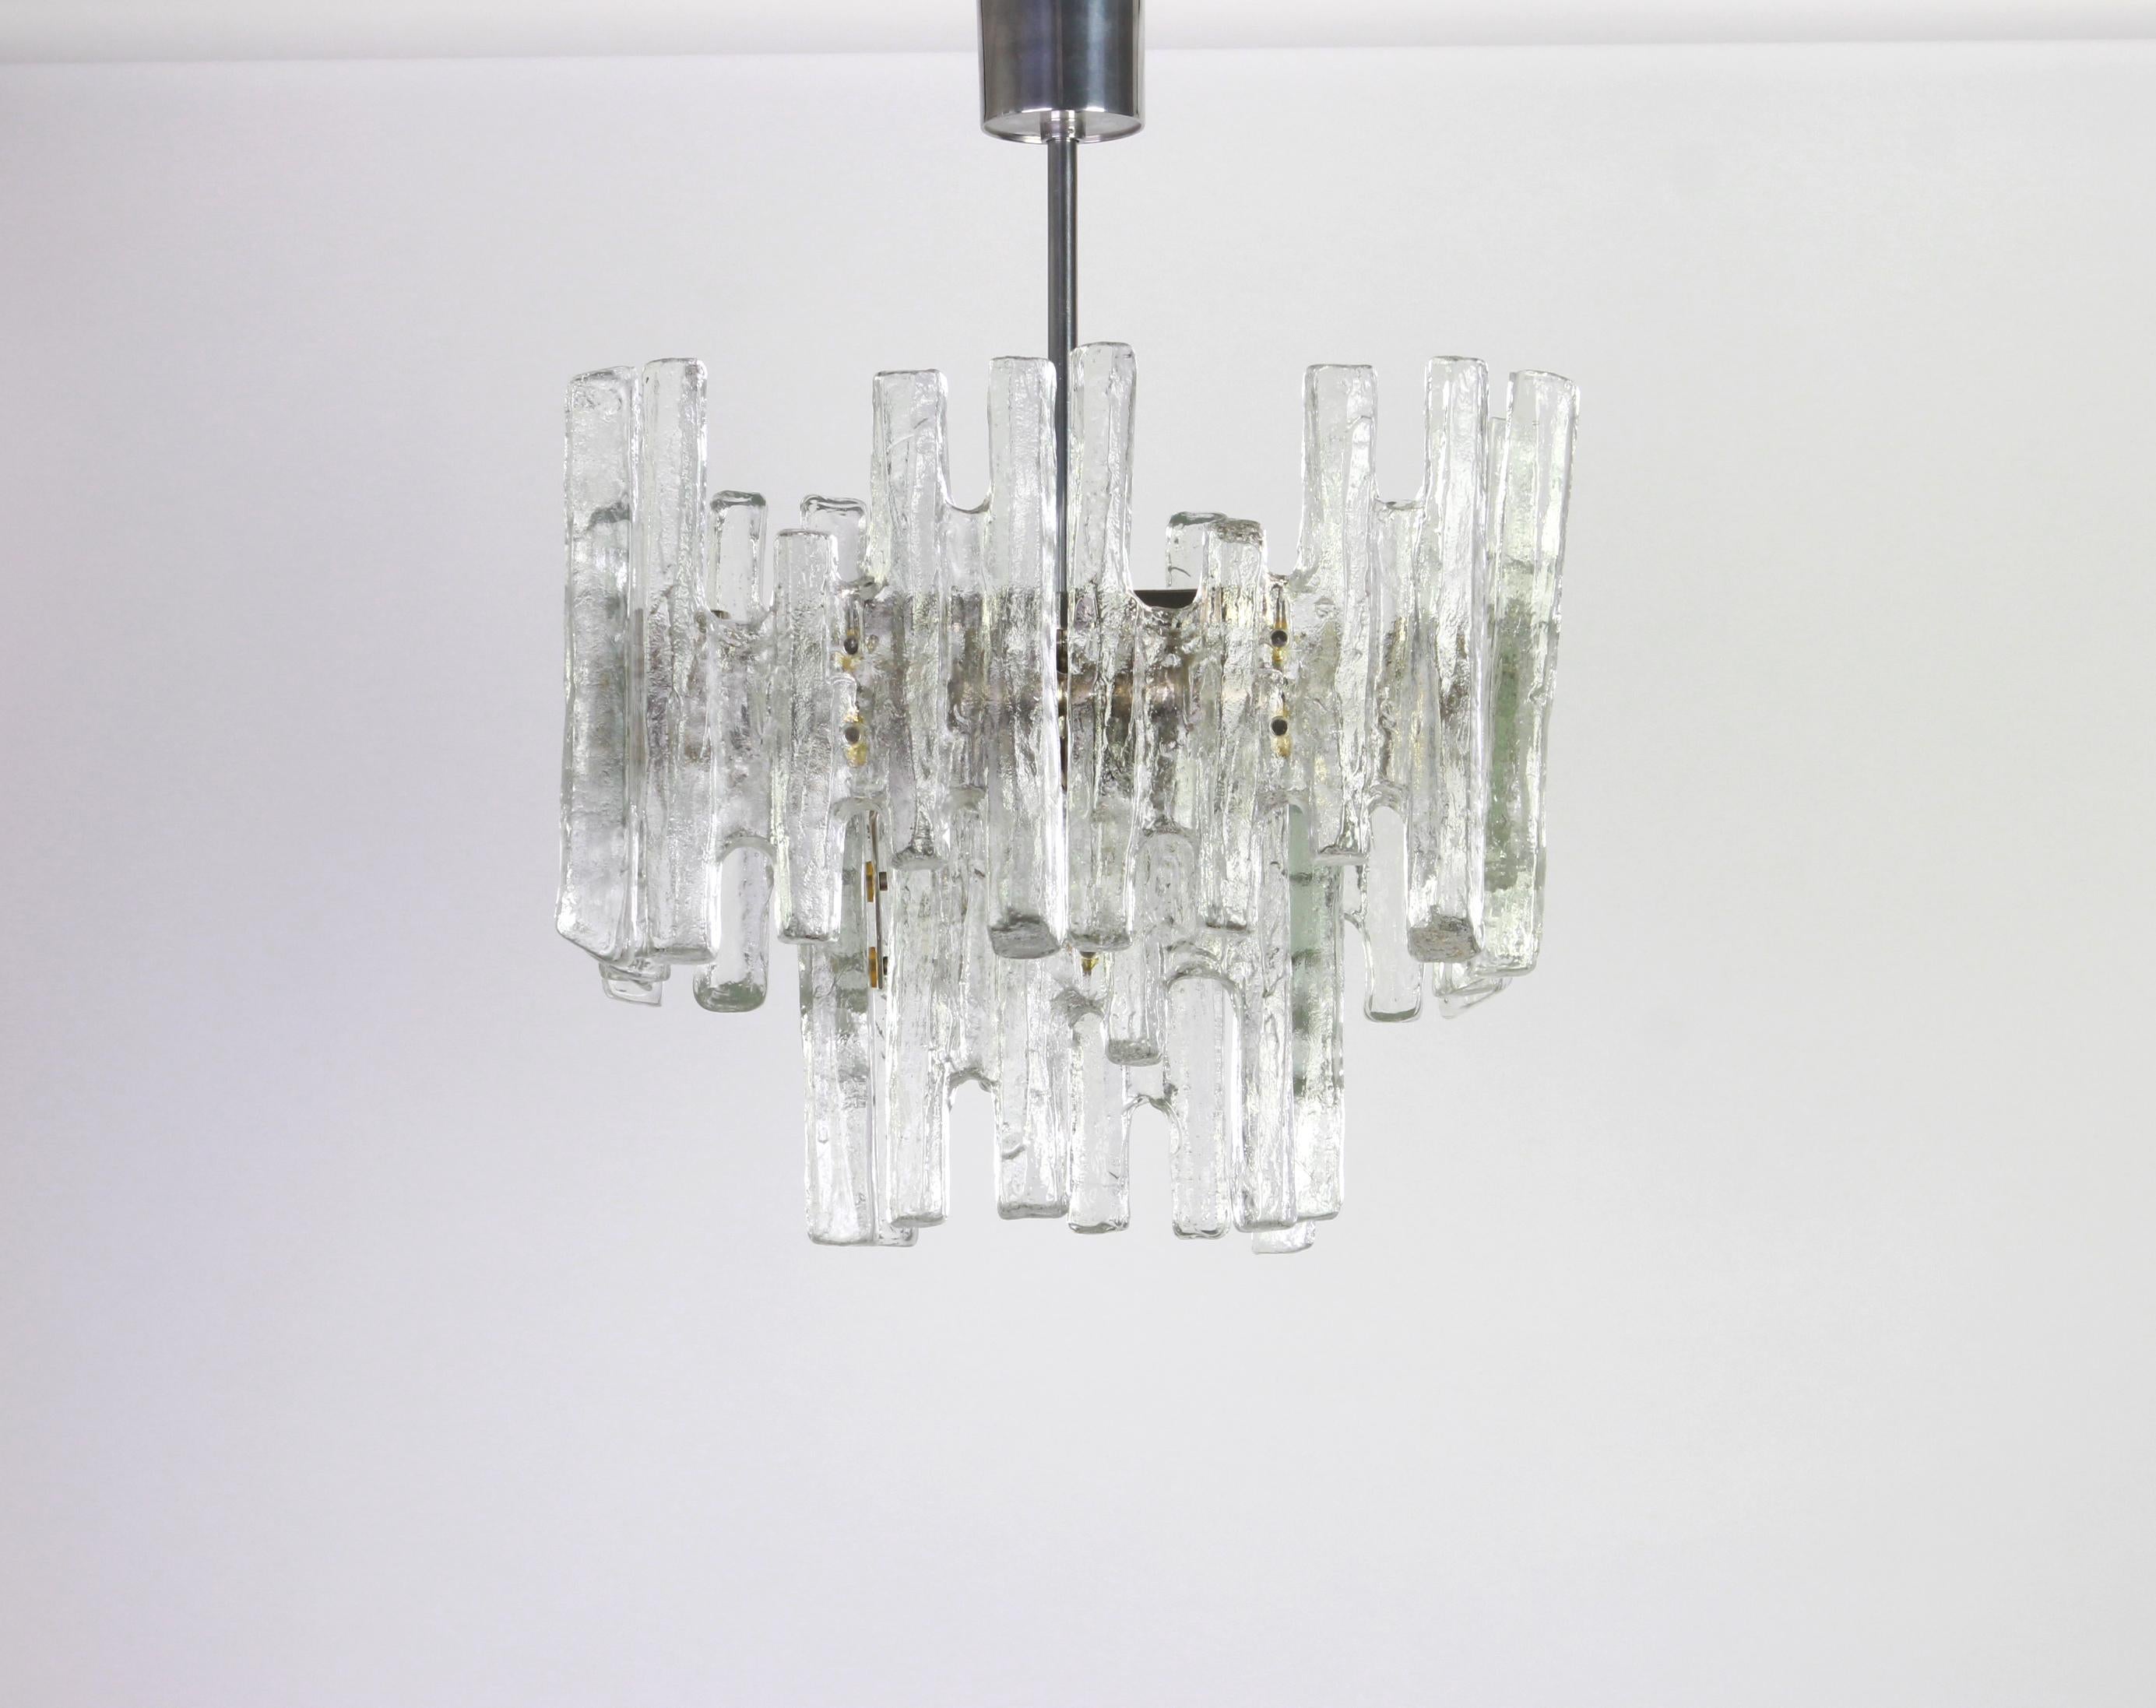 Prächtiger Kronleuchter aus Muranoglas von Kalmar, 1960er Jahre
Zwei Etagen Struktur sammeln 12 strukturierte Gläser, schön Brechung des Lichts sehr schwere Qualität.

Hochwertig und in sehr gutem Zustand. Gereinigt, gut verkabelt und